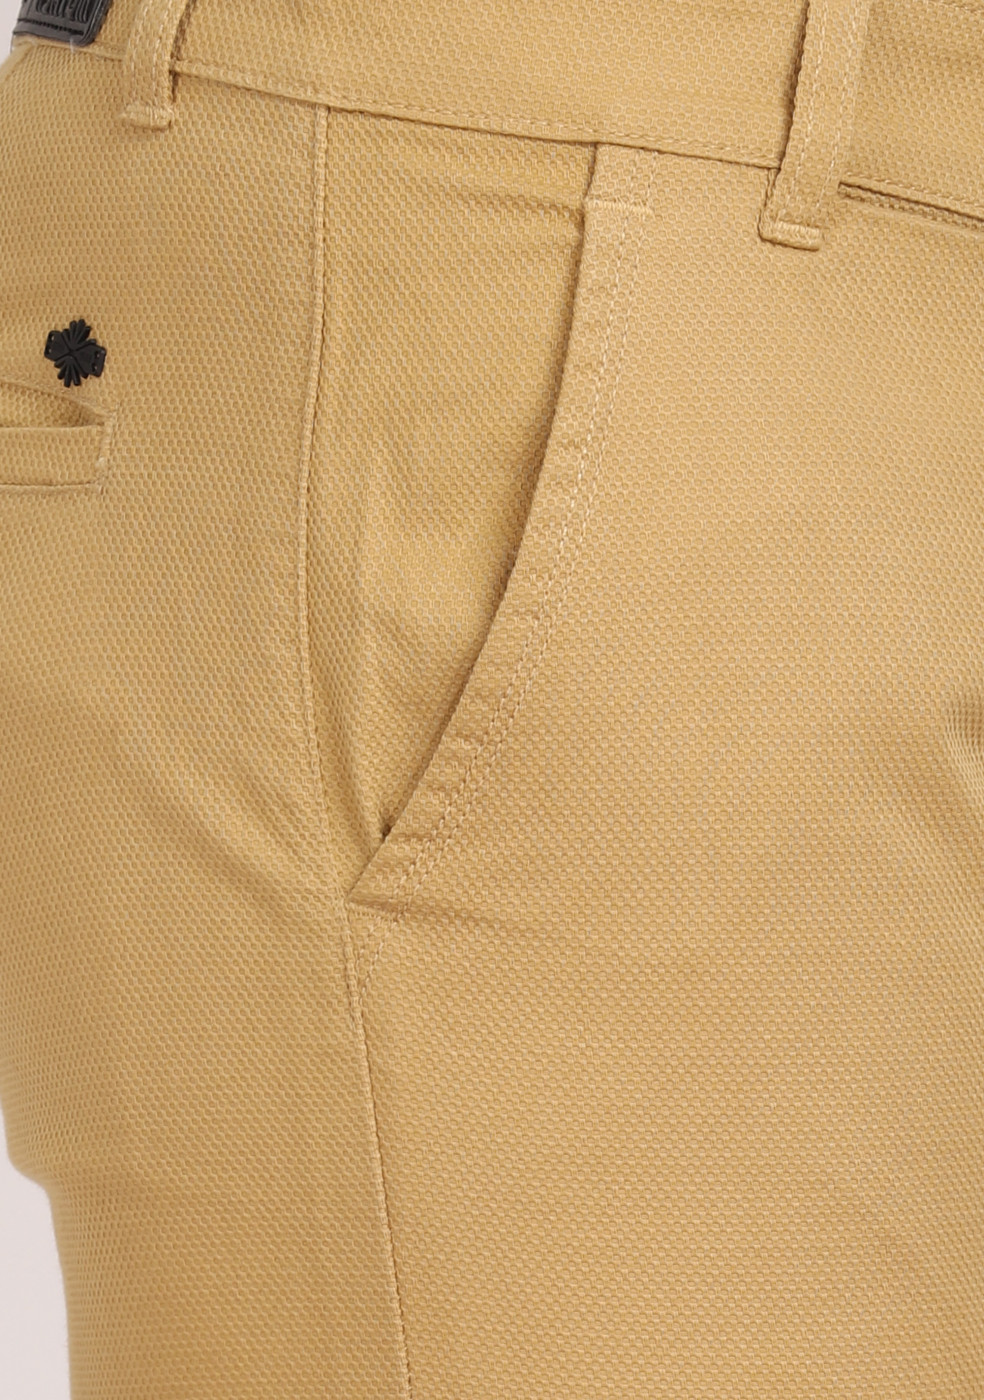 ASHTOM Khaki Formal Cotton Trouser Regular Fit For Men